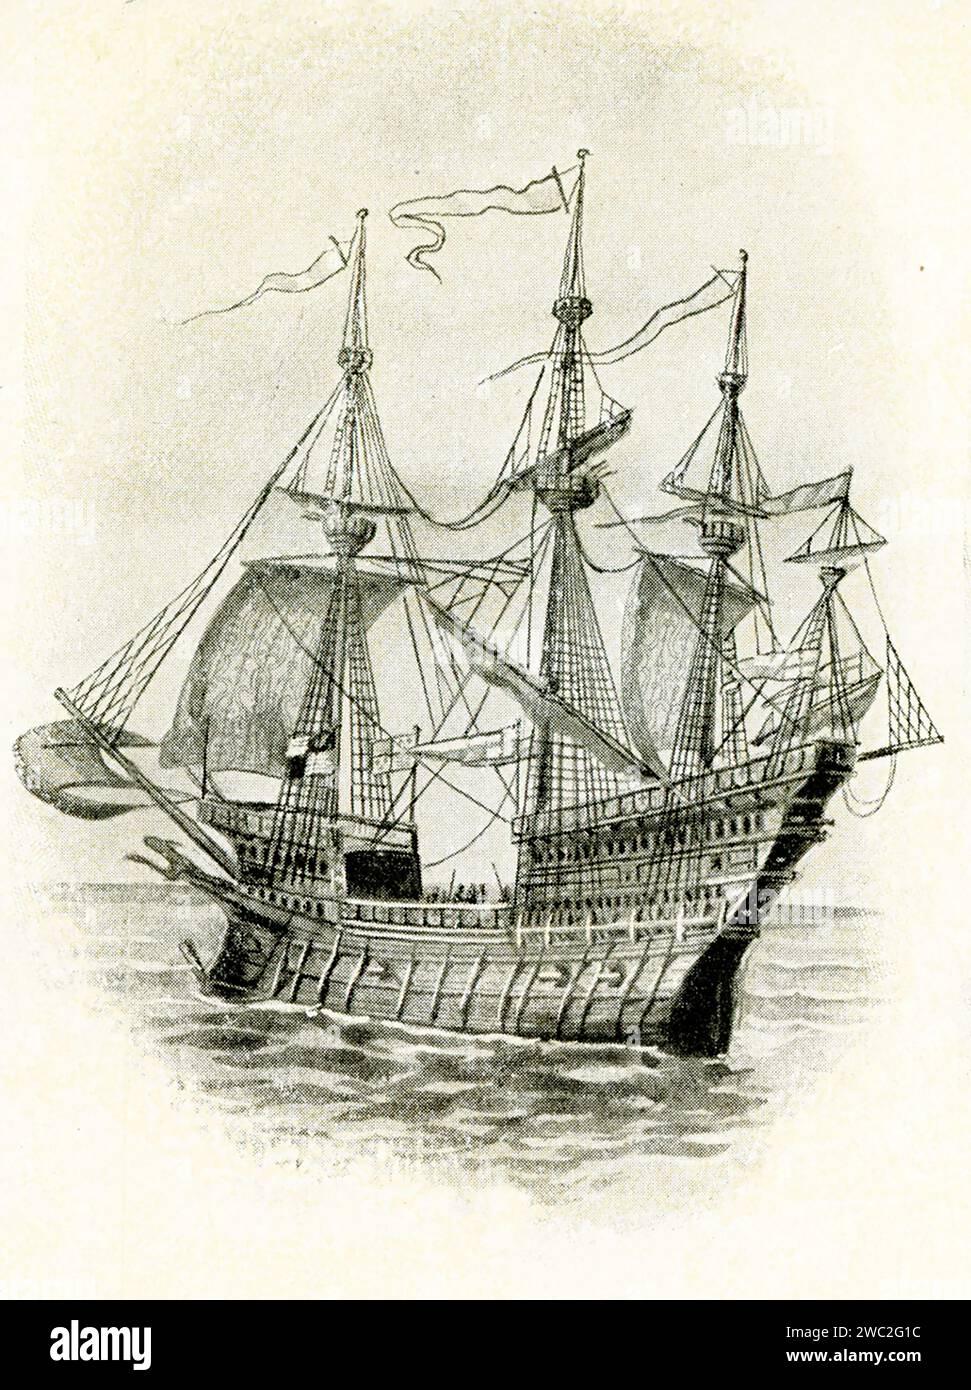 Niederländisches Handelsschiff Ende des 16. Jahrhunderts. Dieser Stil ist als Fluyt bekannt – dieser Segeltyp wurde ursprünglich von den Schiffbauern von Hoorn als Frachtschiff entworfen. Stockfoto